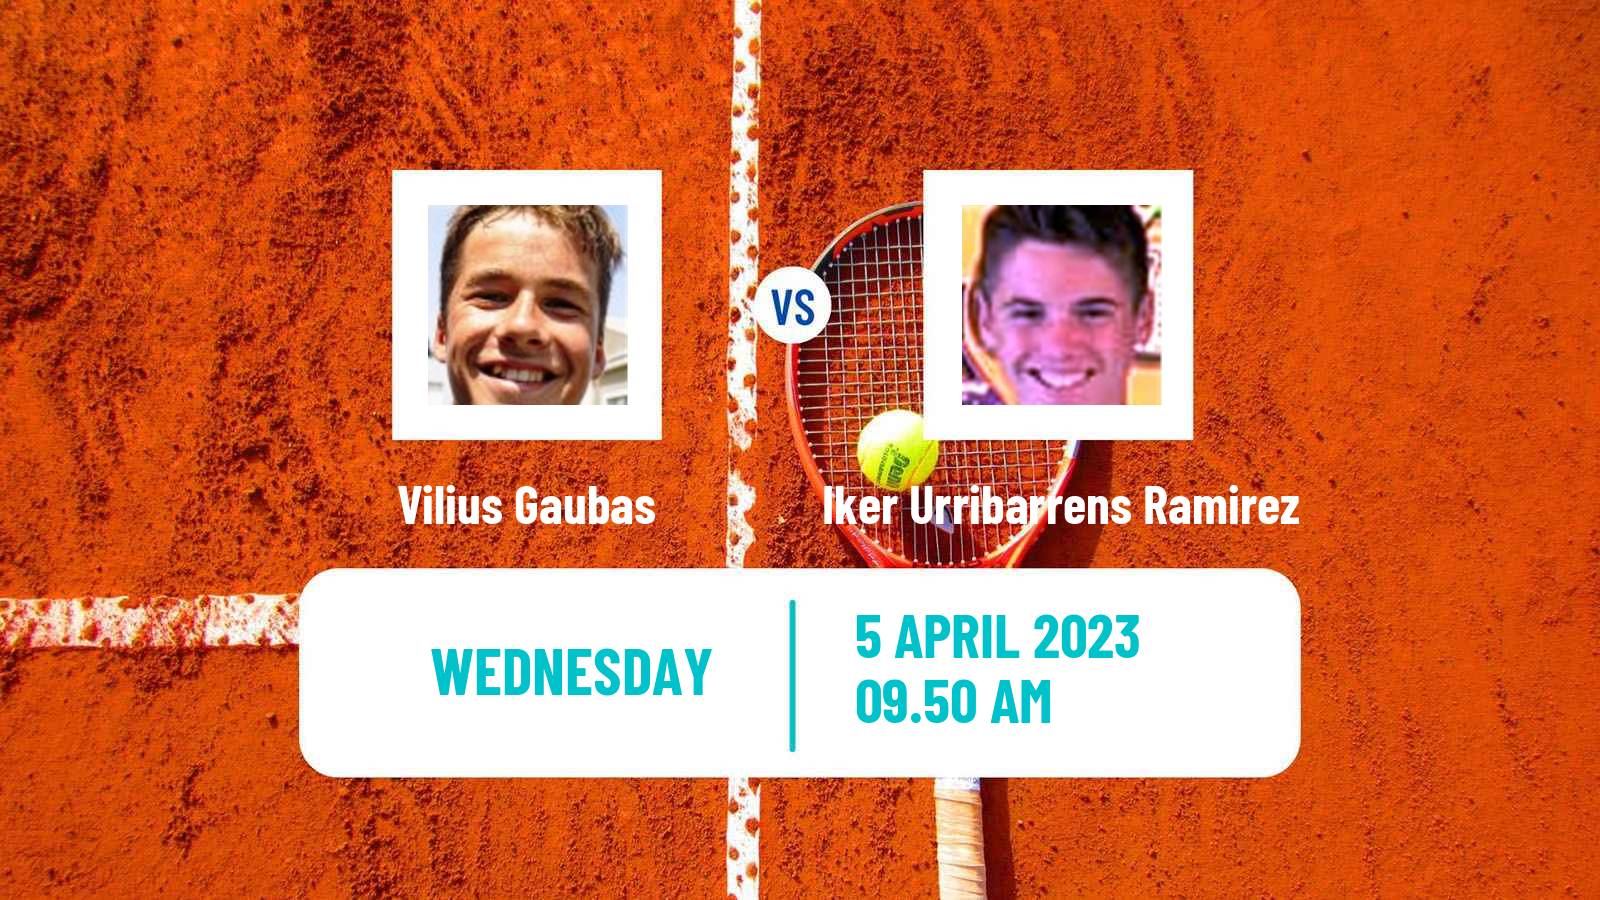 Tennis ITF Tournaments Vilius Gaubas - Iker Urribarrens Ramirez